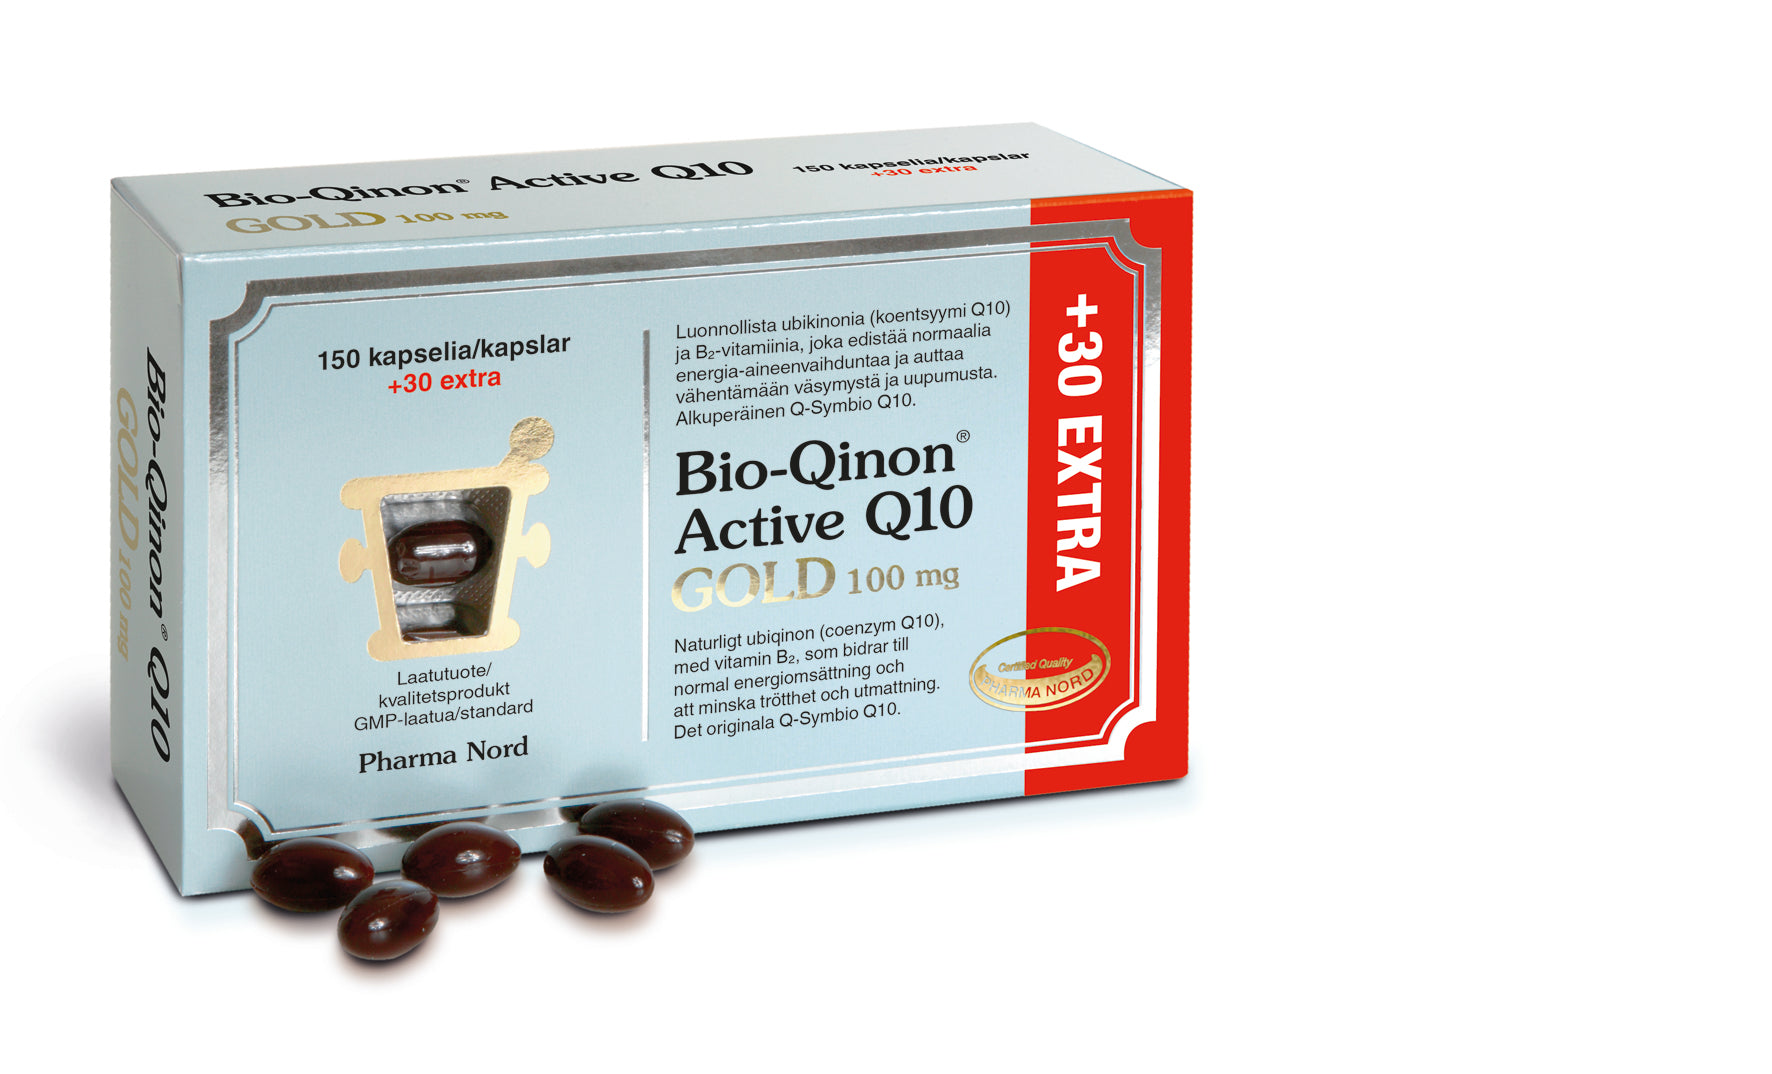 Pharma Nord Bio-Qinon Active Q10 GOLD 100 mg 150+30 kapselia